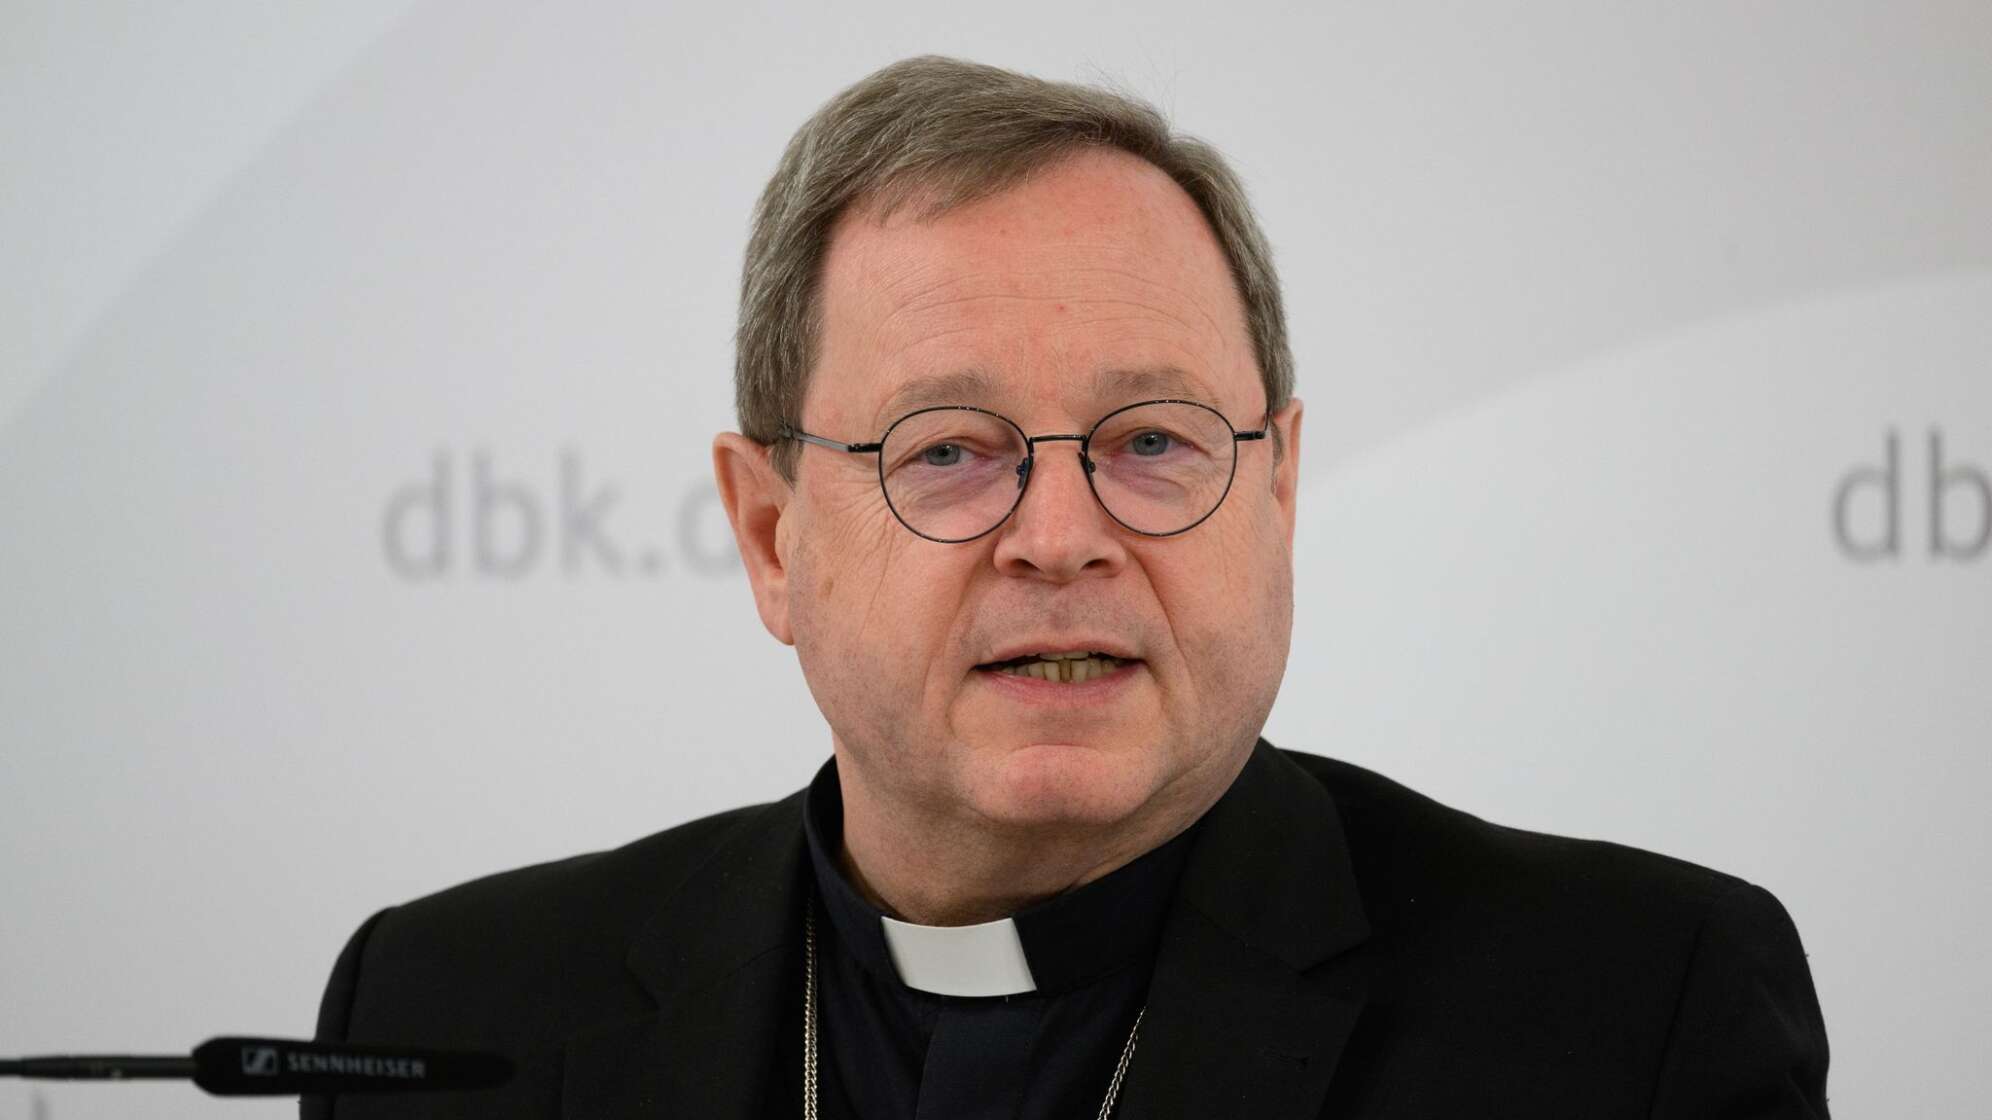 Bischof Bätzing